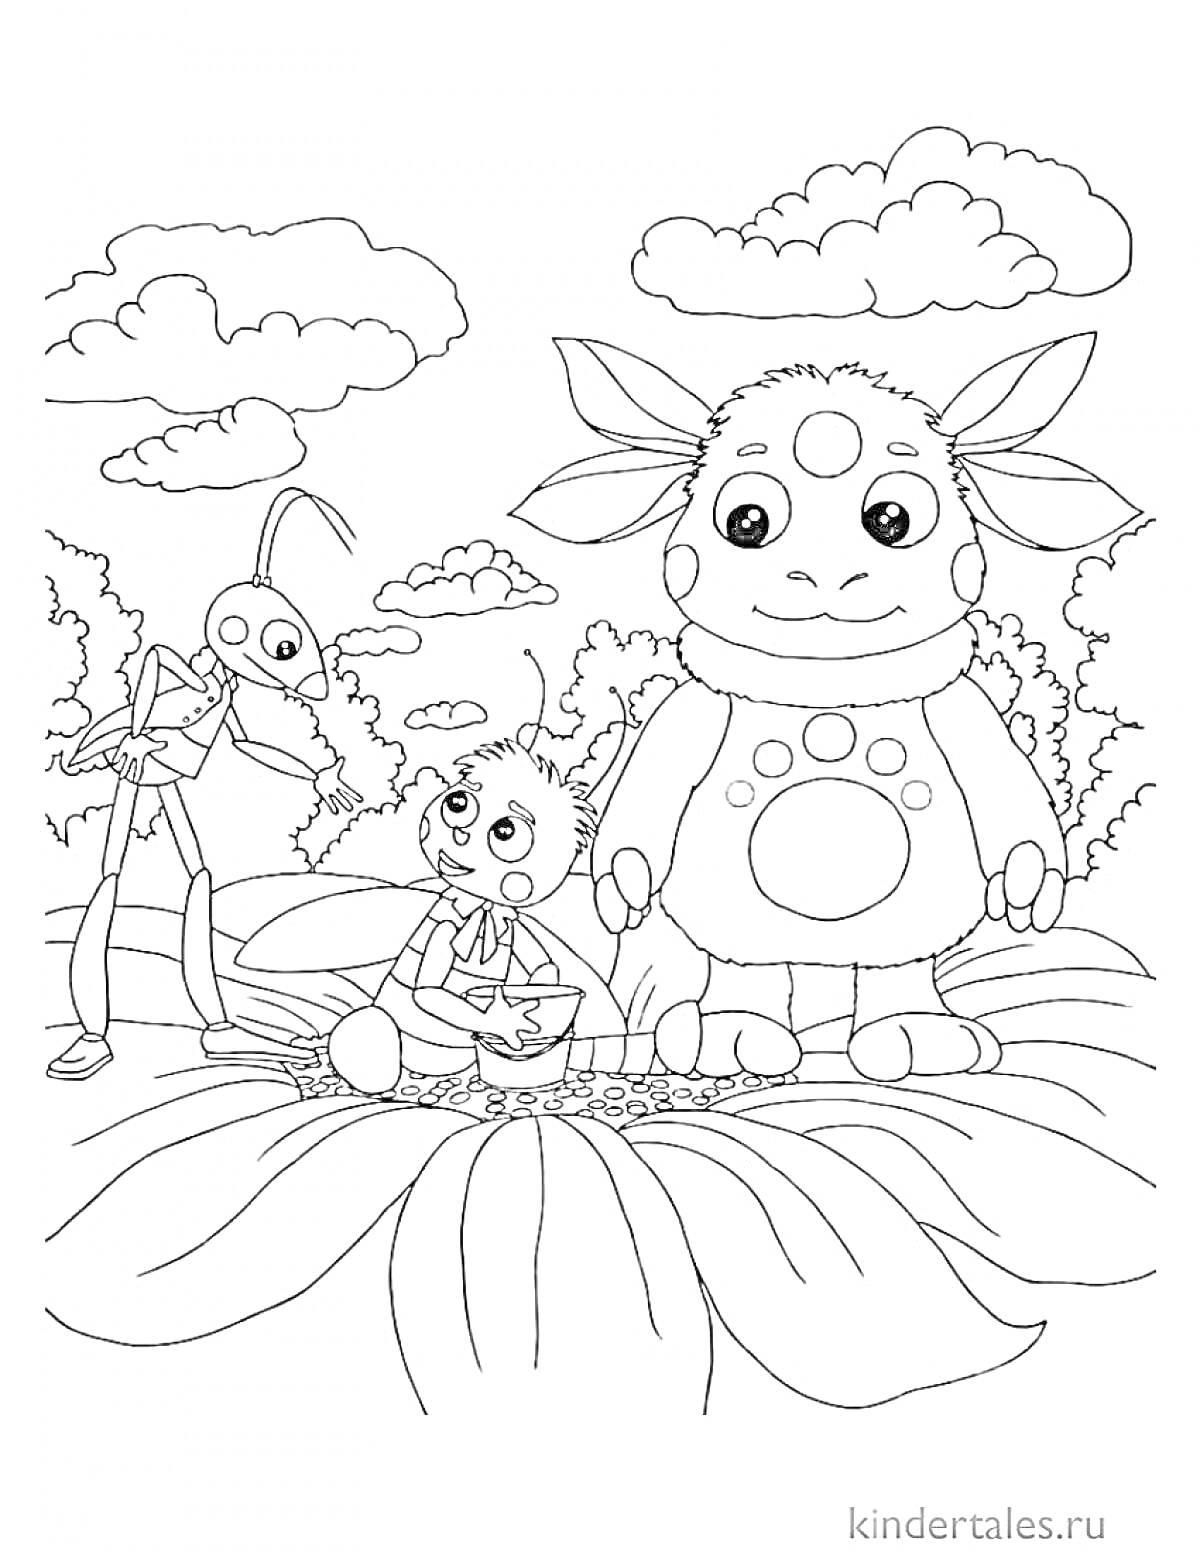 Раскраска Лунтик и его друзья на цветке - Лунтик, кузнечик, малыш